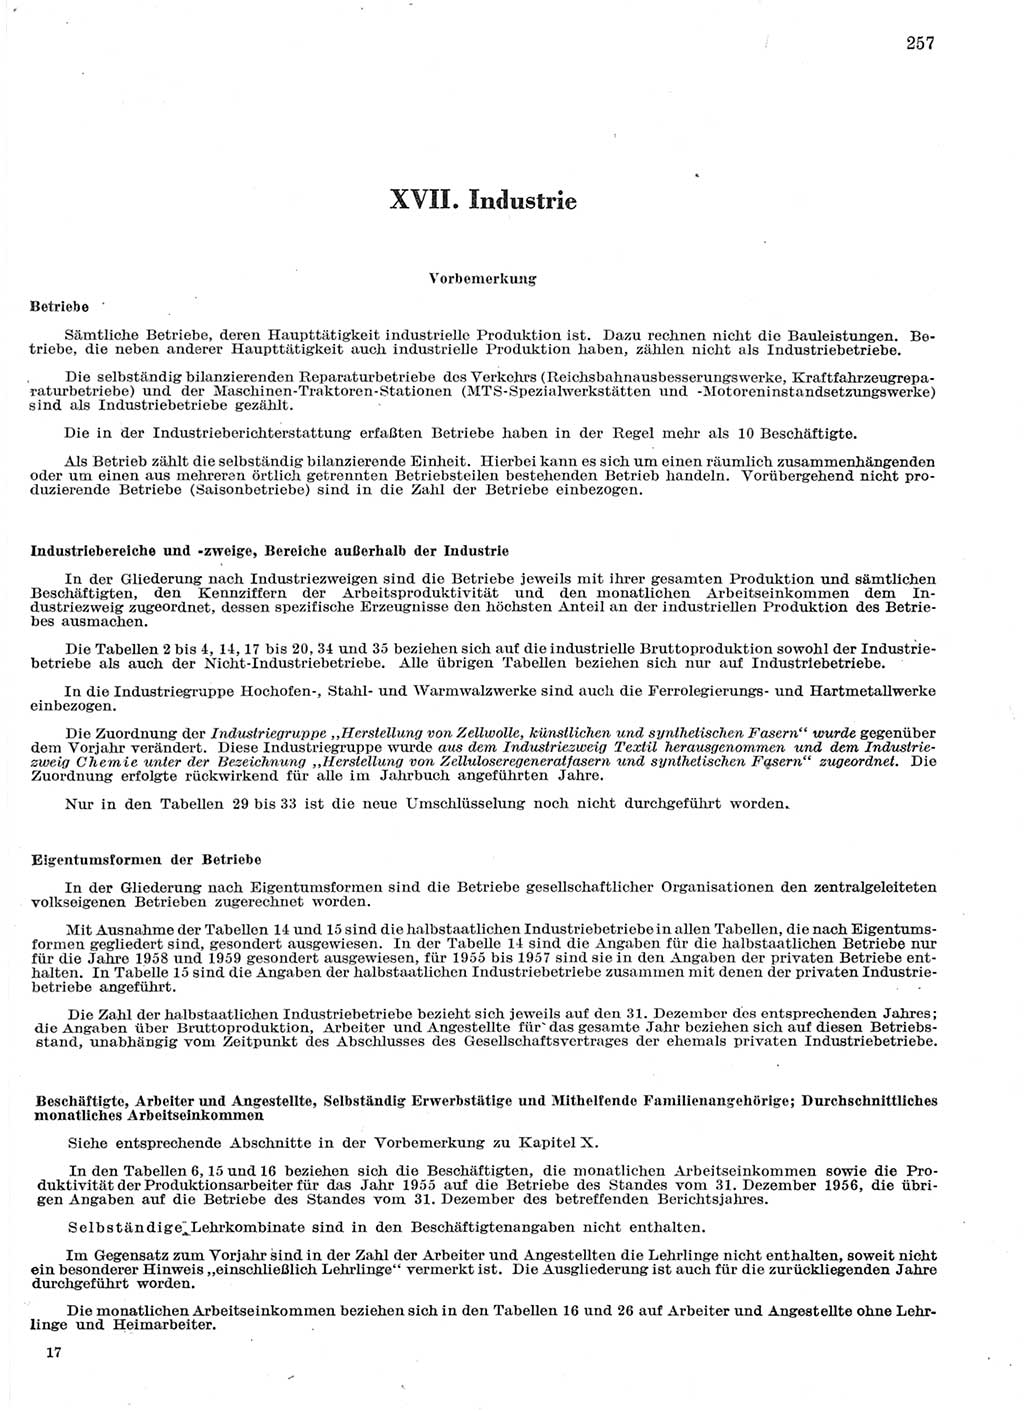 Statistisches Jahrbuch der Deutschen Demokratischen Republik (DDR) 1959, Seite 257 (Stat. Jb. DDR 1959, S. 257)